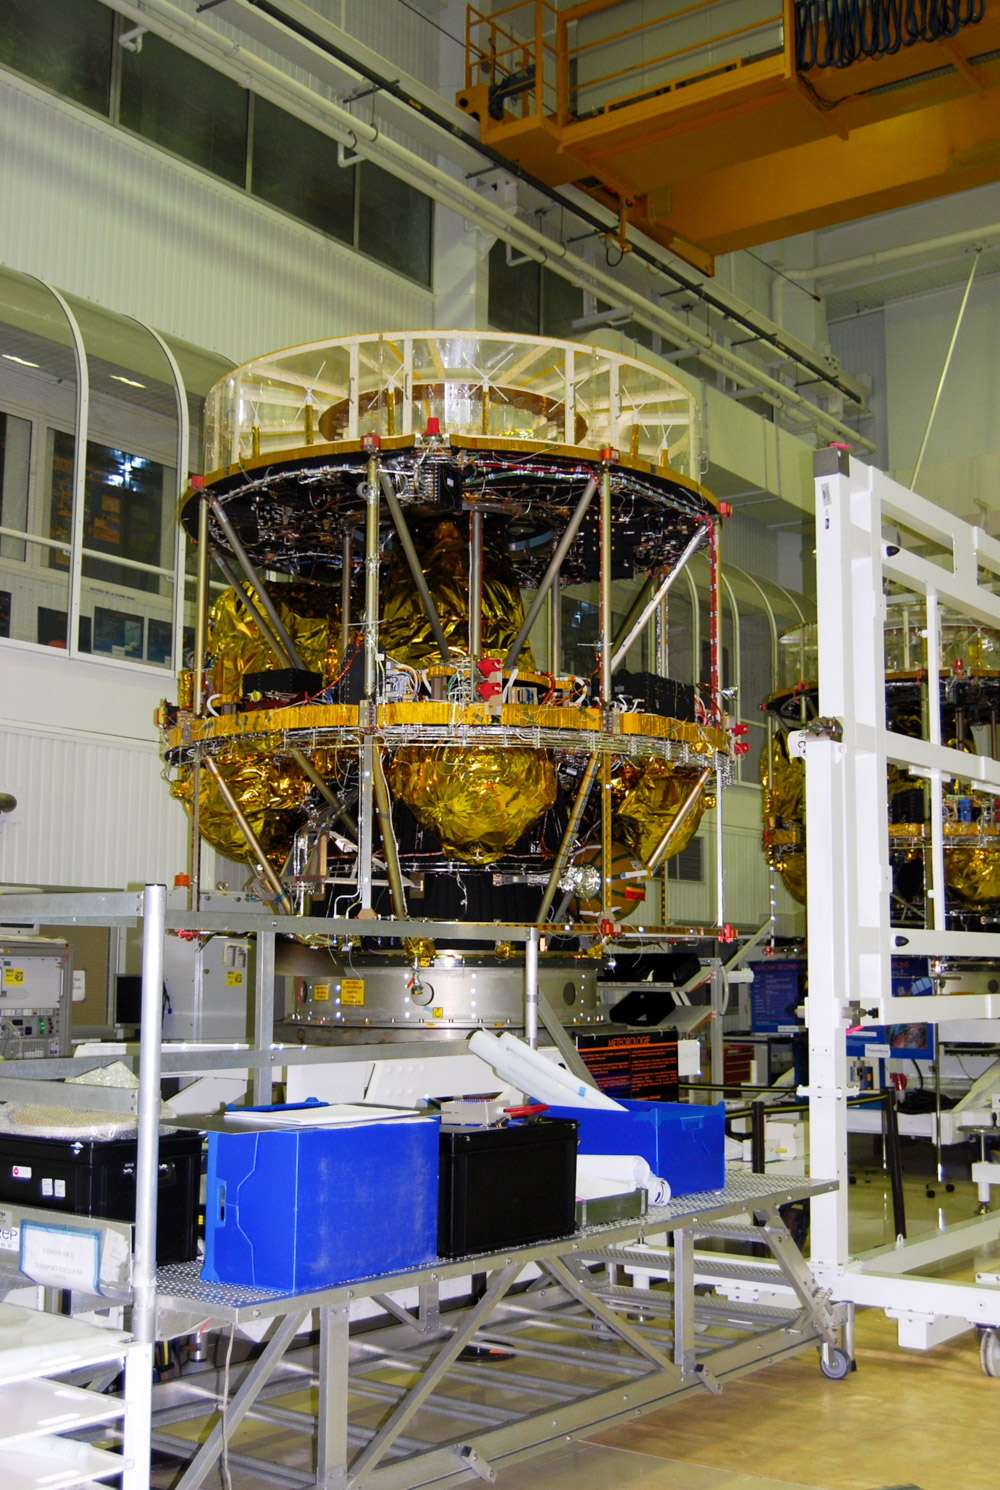 À côté de Séviri, MSG-3 embarque deux charges utiles secondaires. Le détecteur du bilan radiatif terrestre global qui mesurera à la fois la quantité d'énergie solaire qui est réfléchie dans l'espace et le rayonnement thermique émis par la Terre. Le second instrument est un répéteur de recherche et sauvetage qui permettra à MSG-3 d’assurer le relais des signaux de détresse lancés par balise. À l'image, un satellite de seconde génération en cours de construction chez Thales Alenia Space, à Cannes. © Flashespace, R. Decourt